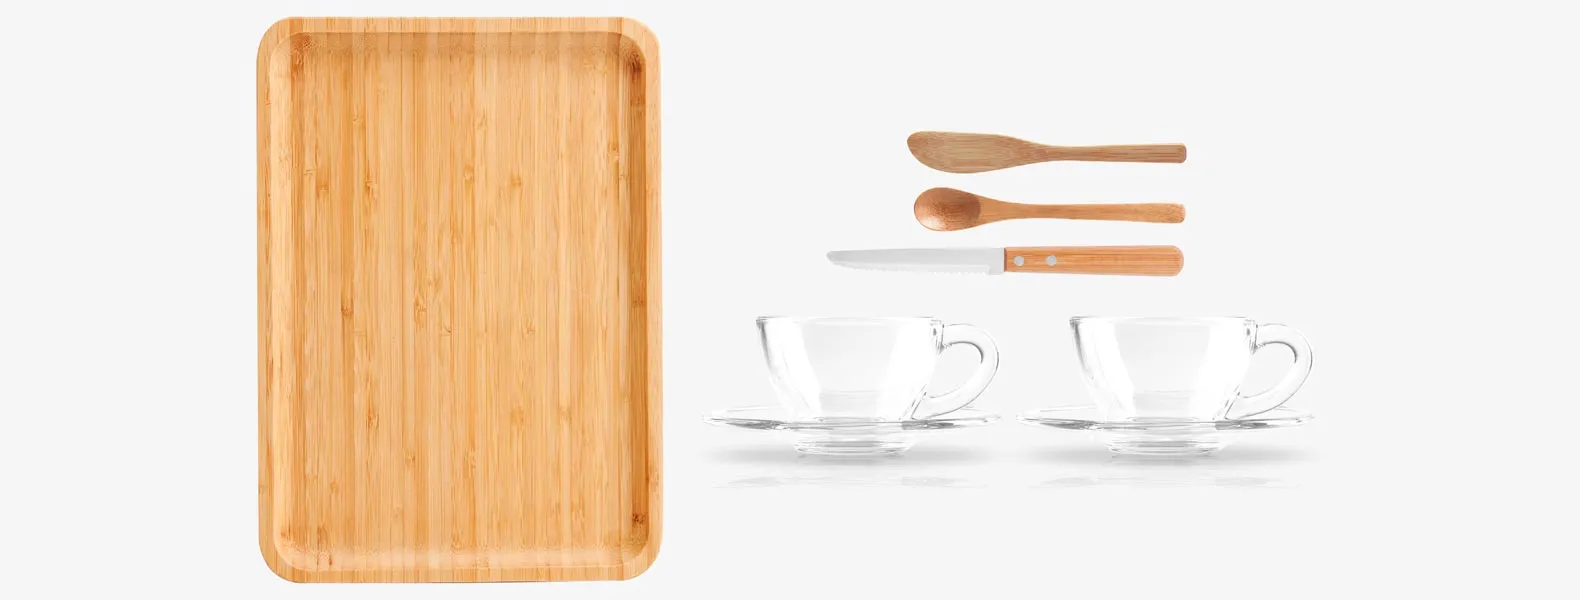 Kit para cafézinho/chá. Conta com bandeja, espátula, duas colheres em bambu e duas xícaras com pires em vidro.